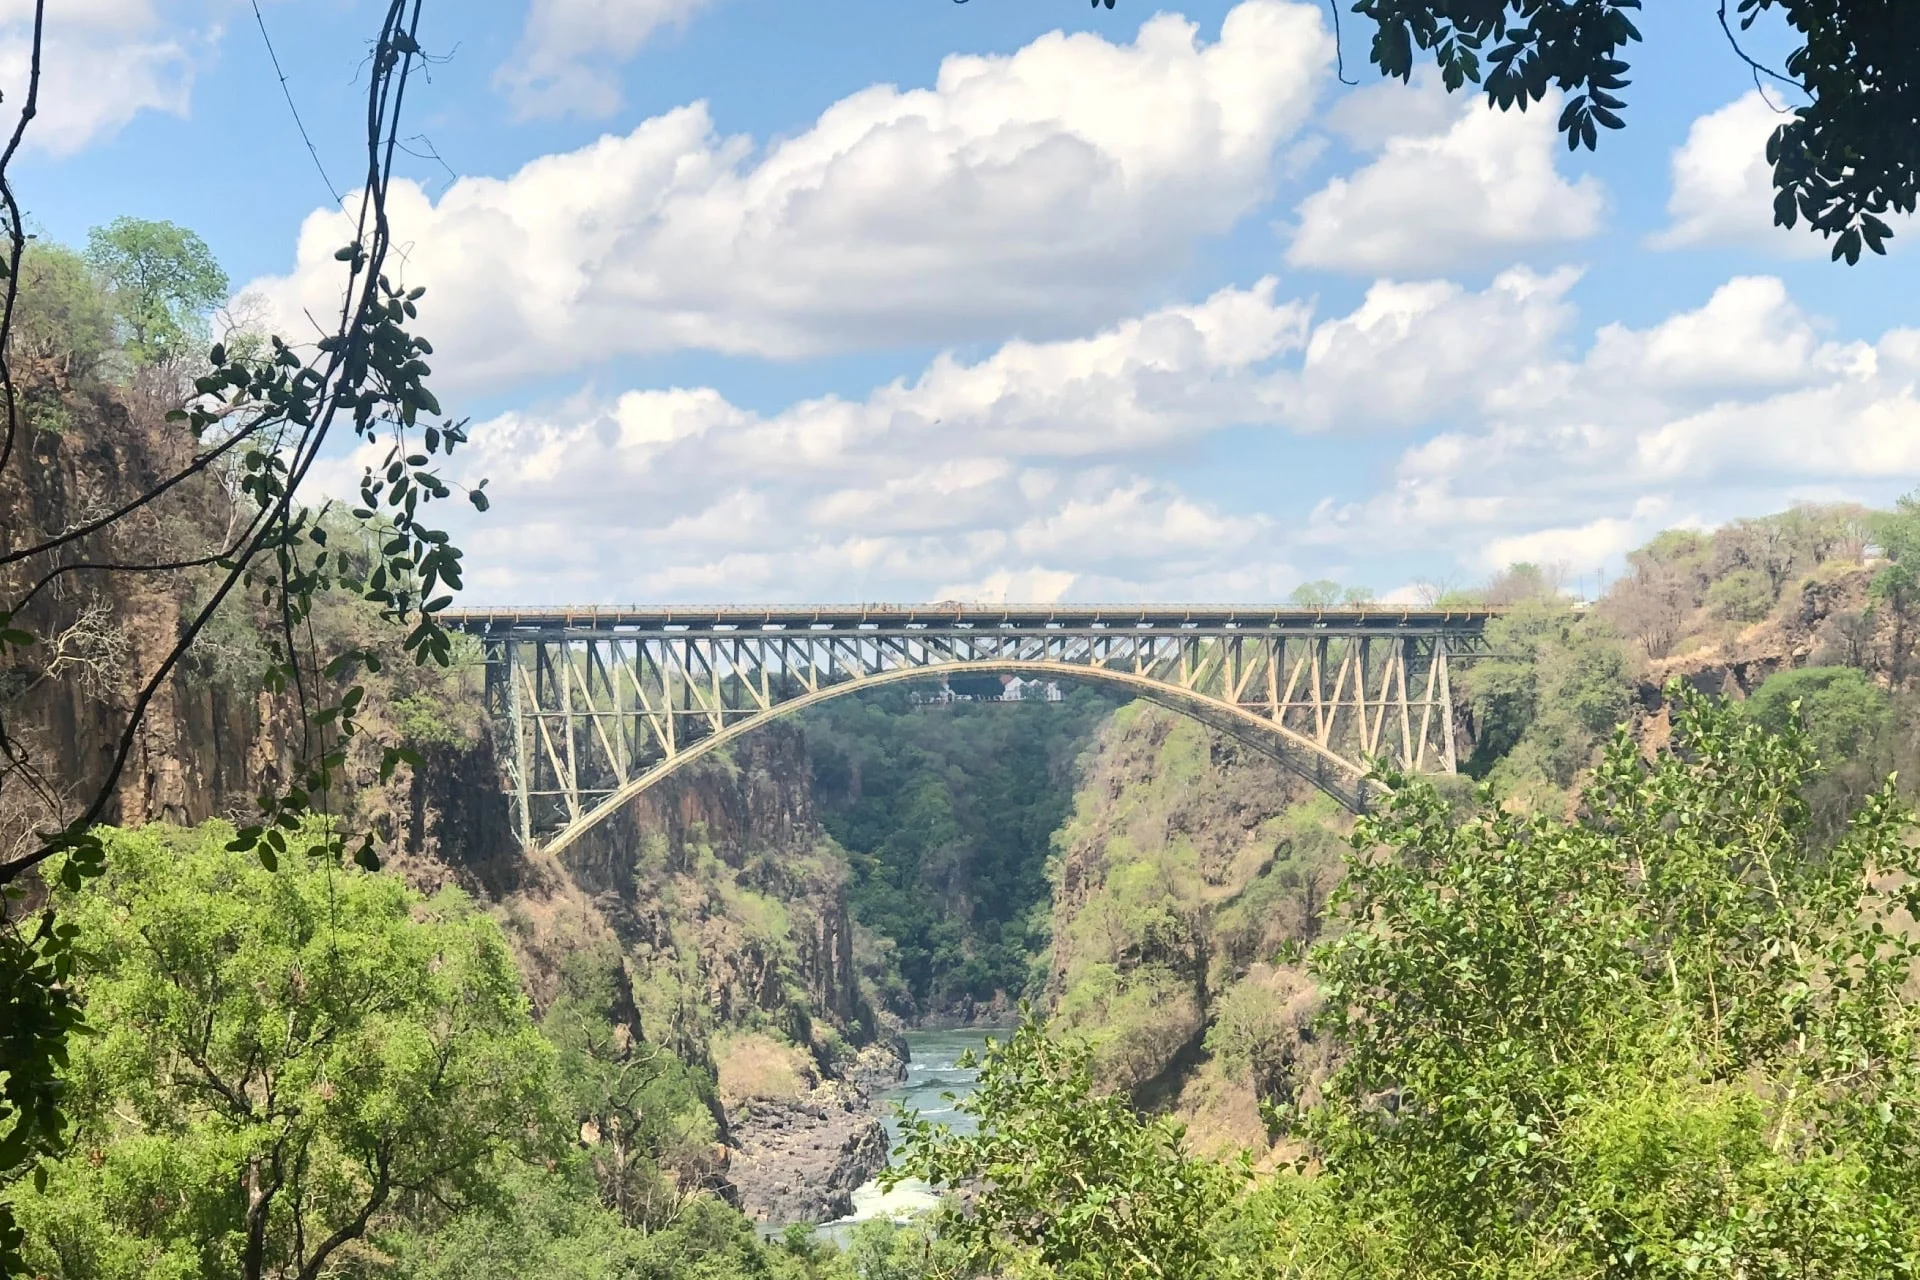 The victoria falls bridge in zambia.